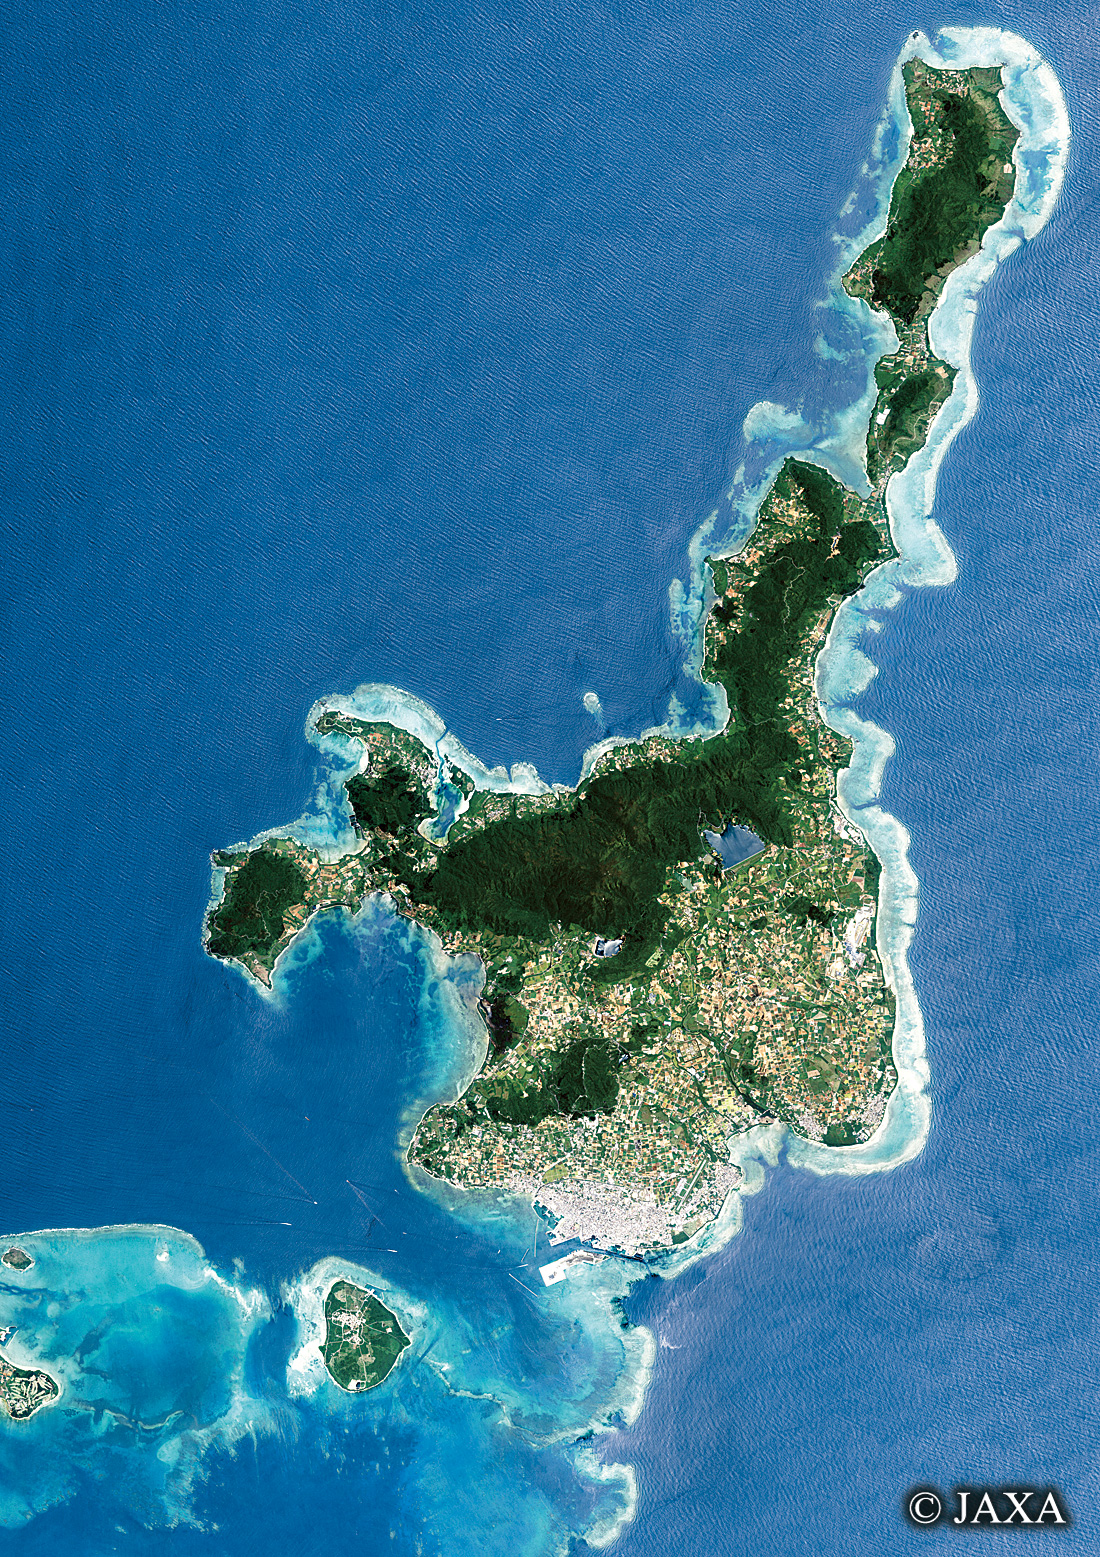 だいちから見た日本の都市 石垣島:衛星画像